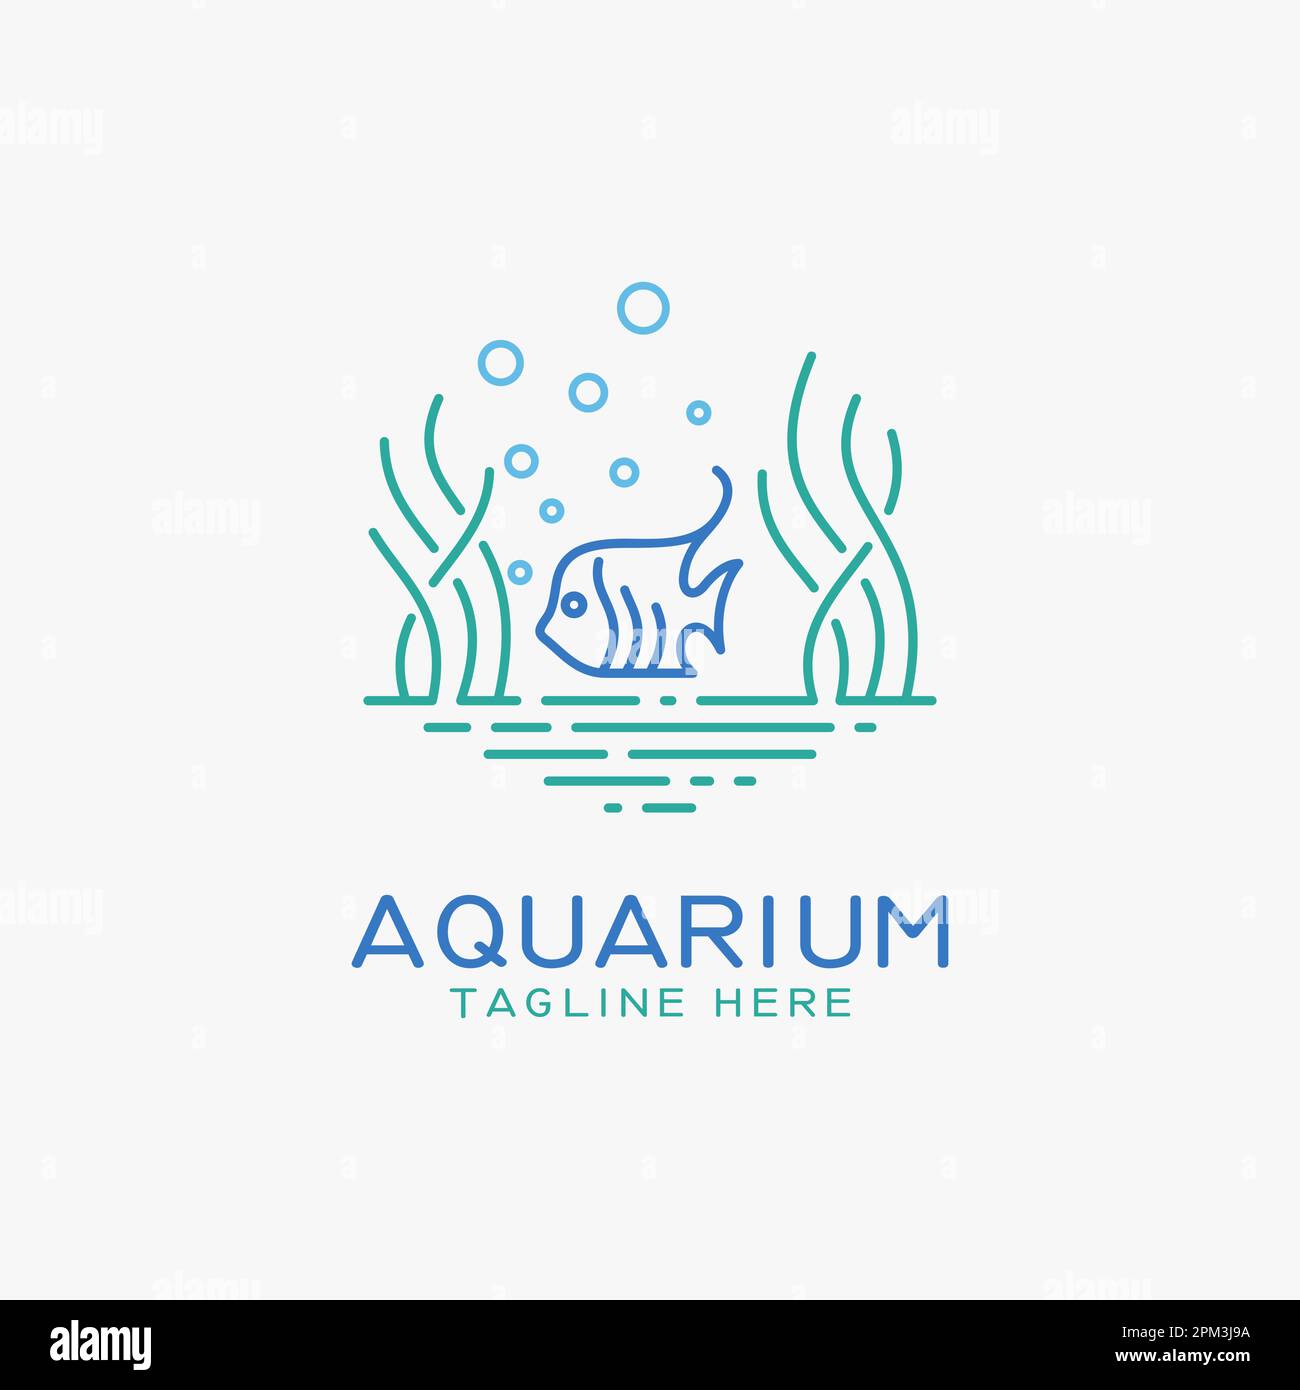 Aquarium and fish logo design Stock Vector